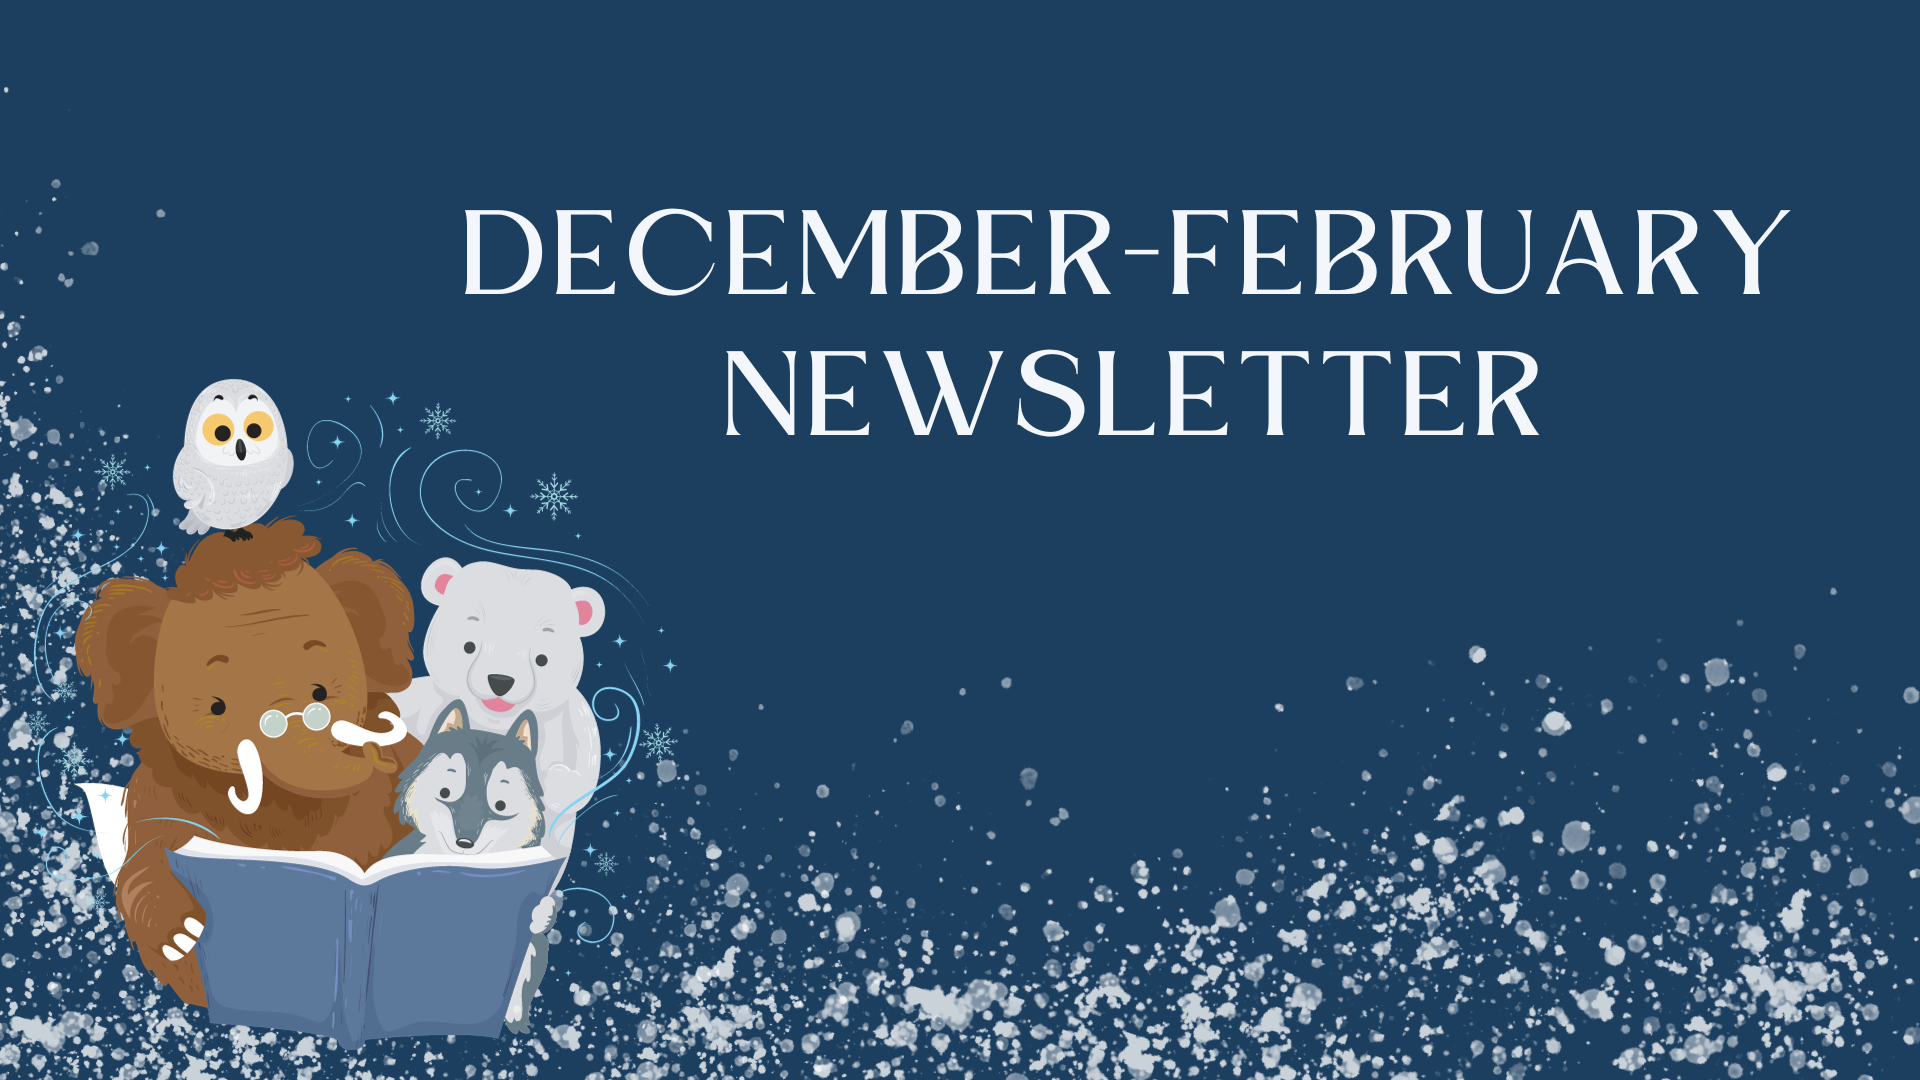 December-February Newsletter